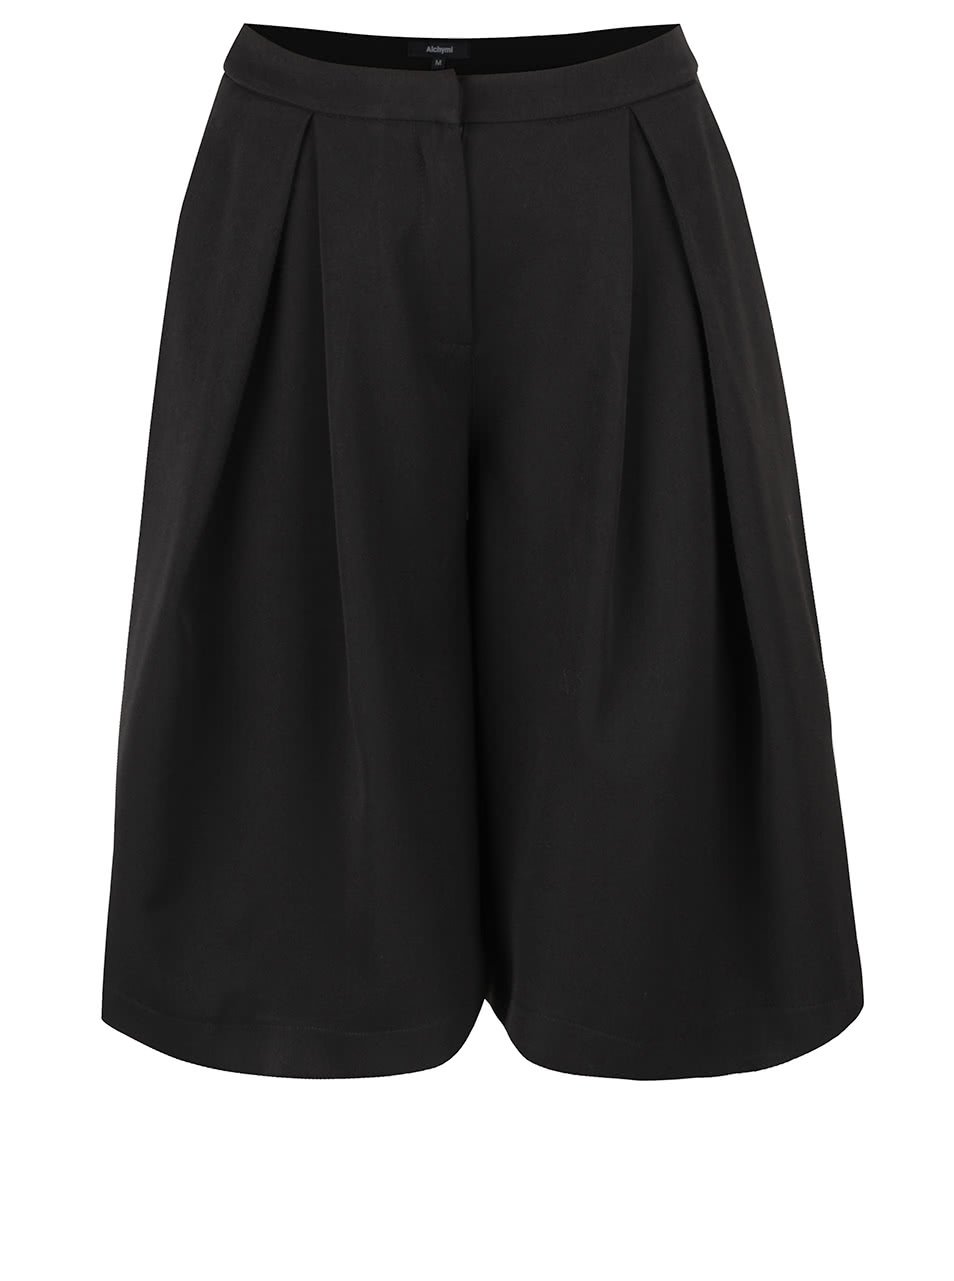 Černé krátké culottes kalhoty Alchymi Payette